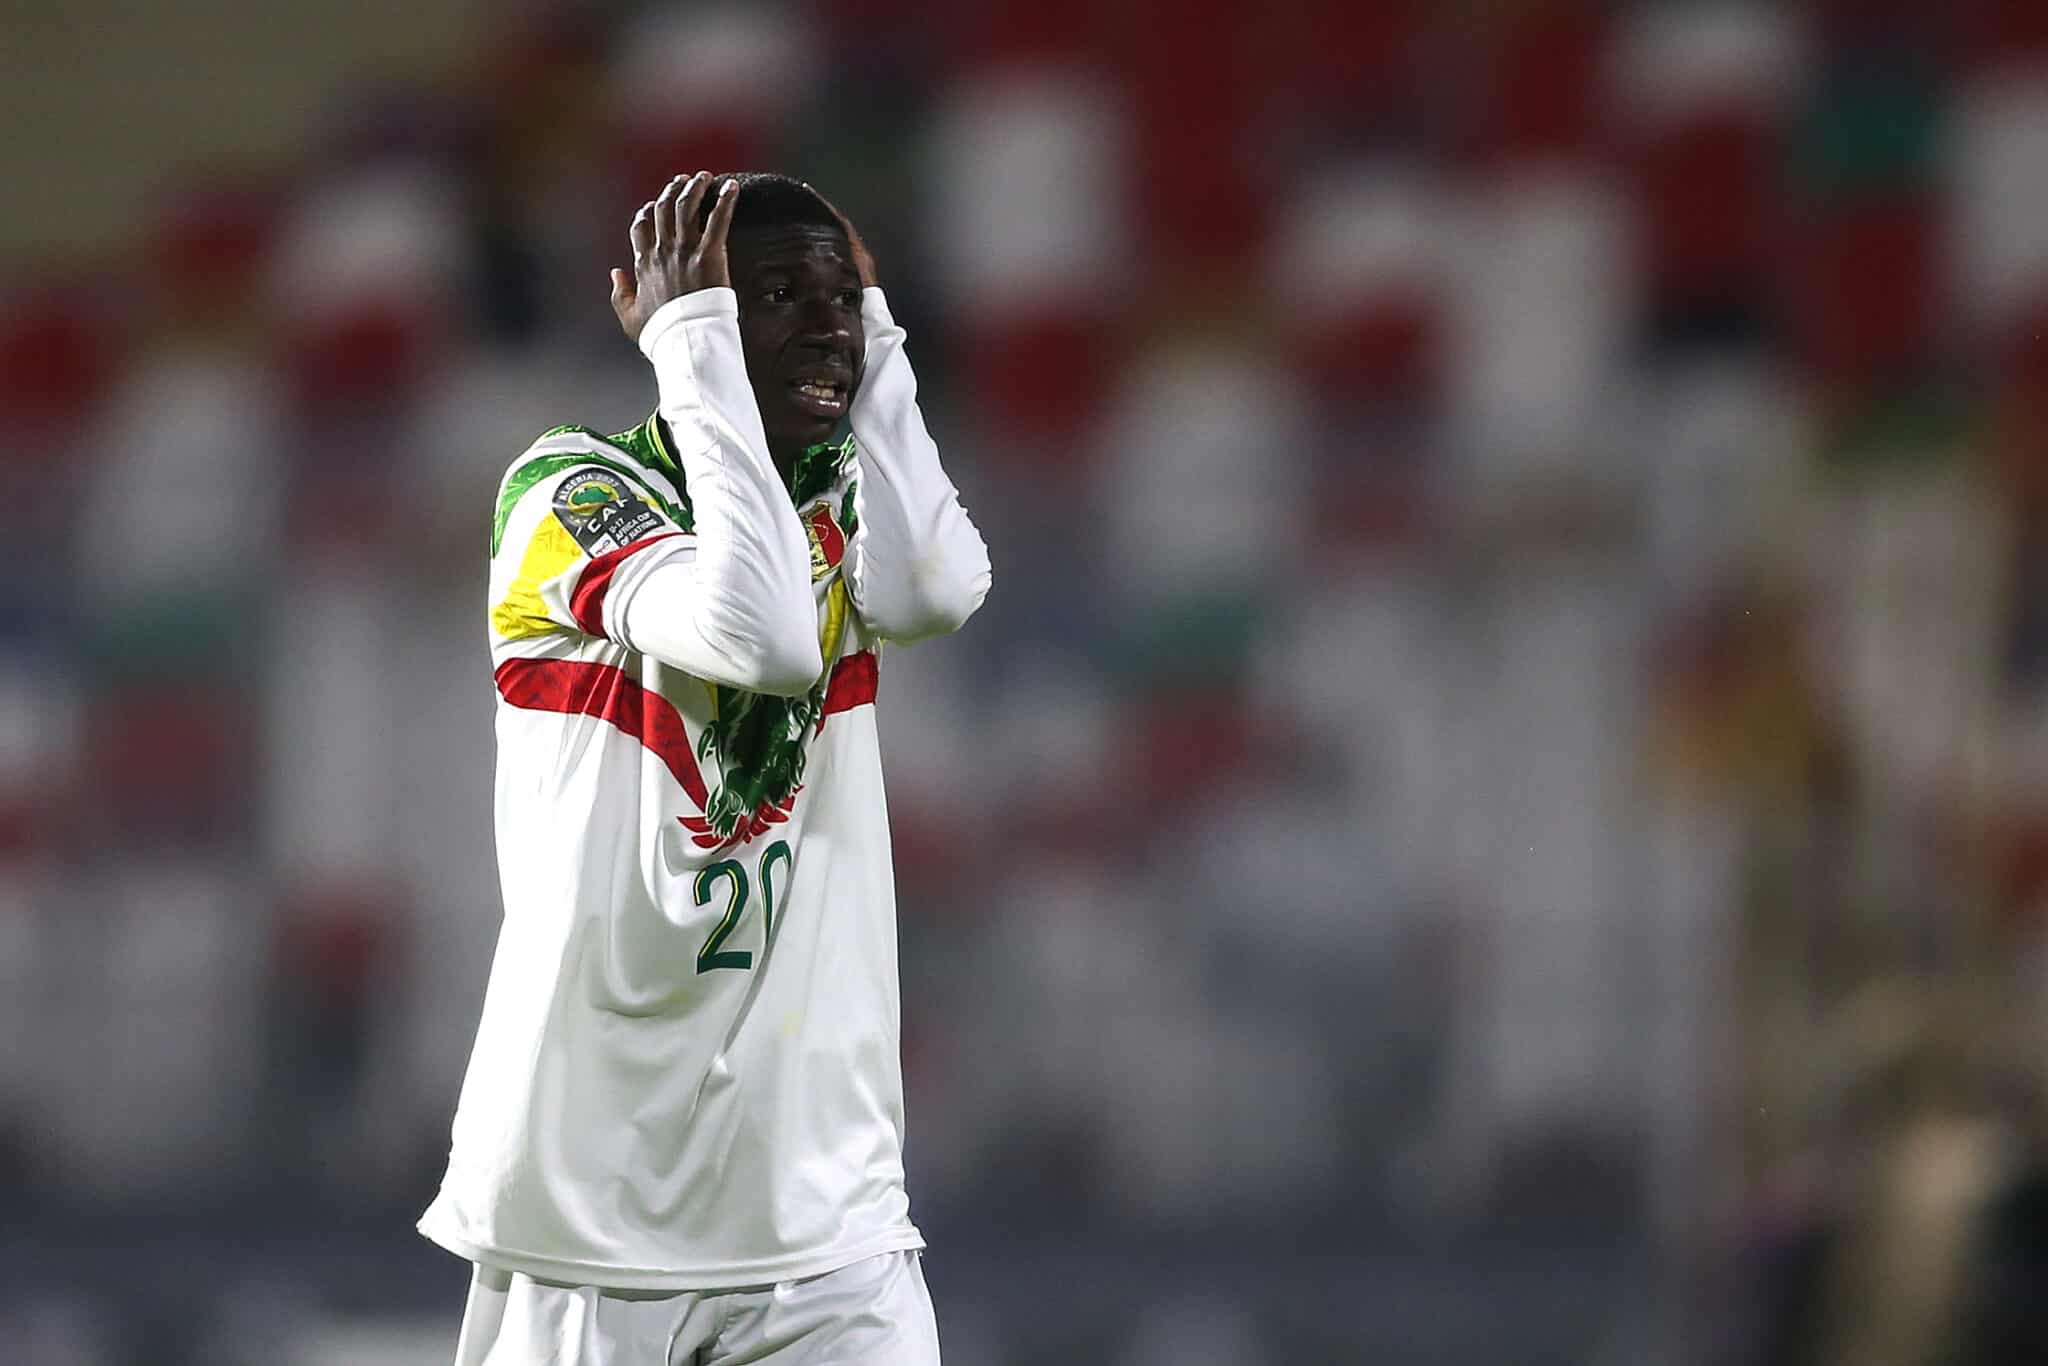 Coupe du monde U17. Éliminé en demi-finale du Mondial des U17, le Mali accuse l’arbitre d’avoir favorisé la France